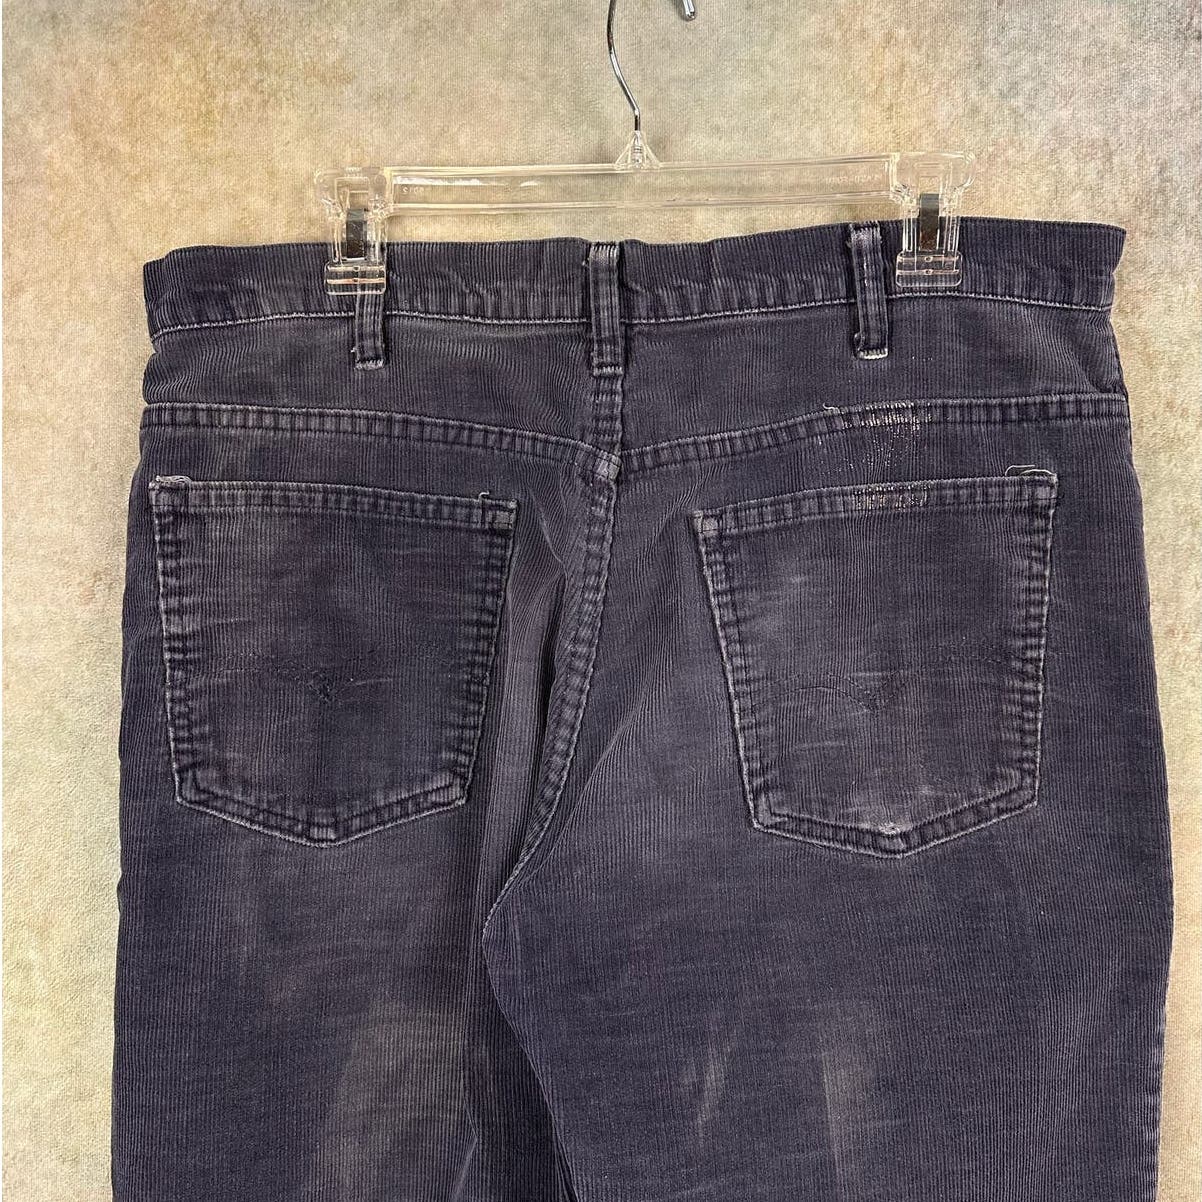 Vintage Levis Corduroy Pants 34x31